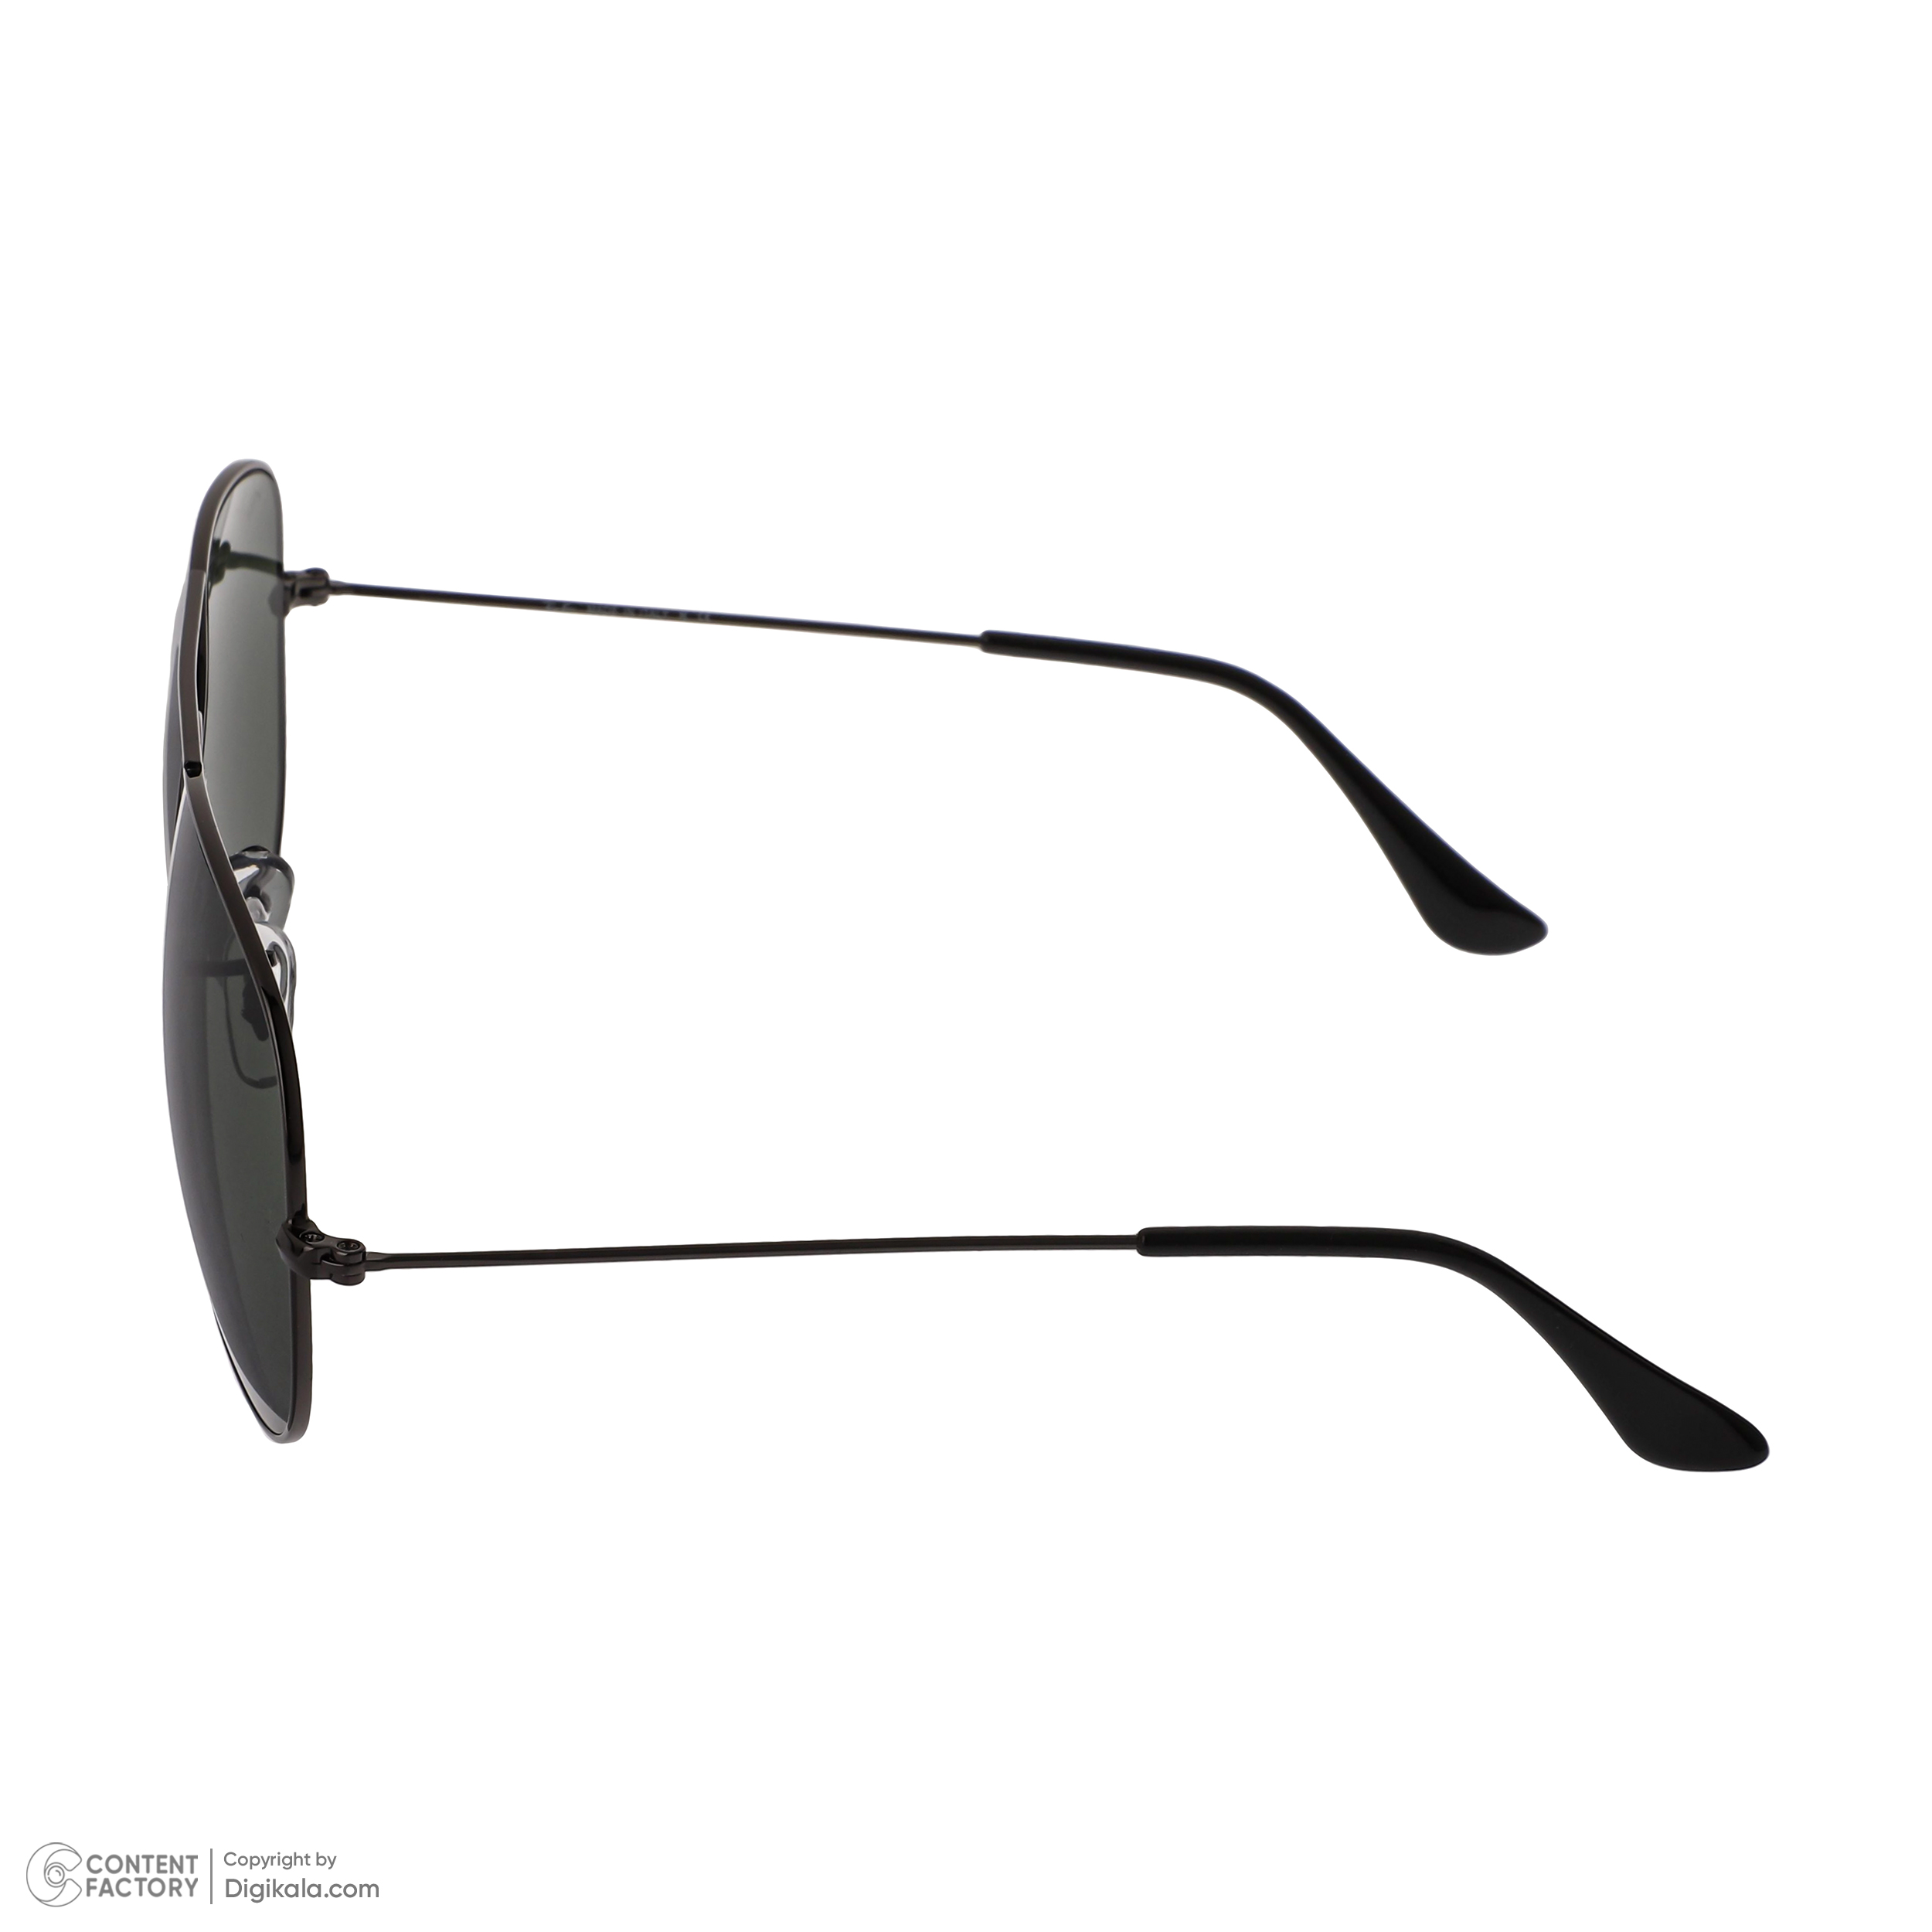 عینک آفتابی ری بن مدل 3026-W0879